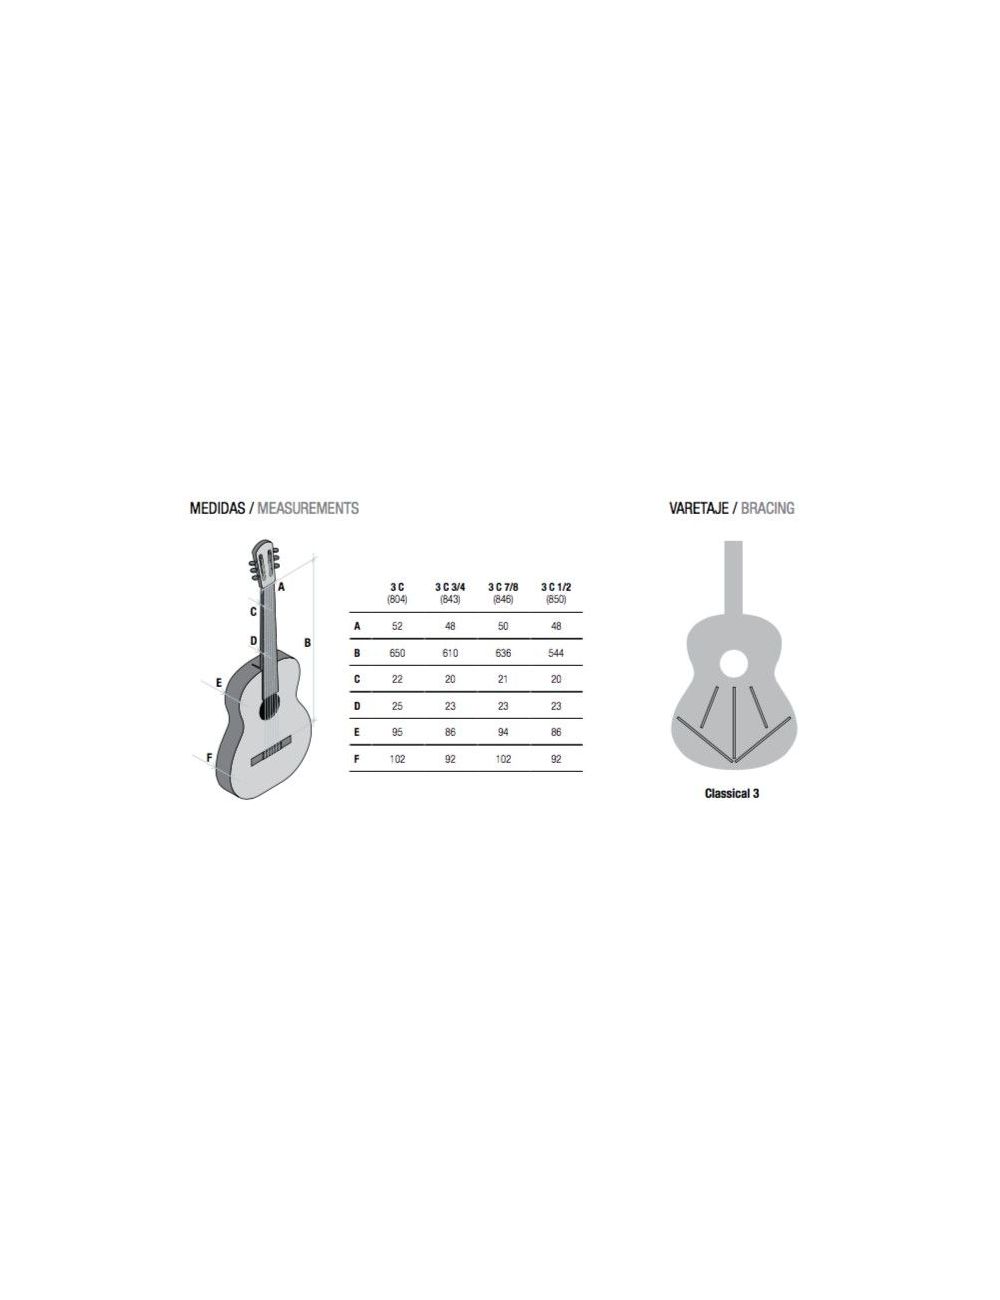 Alhambra 3C 7/8 Classical Guitar senorita 3C 7/8 Special sizes